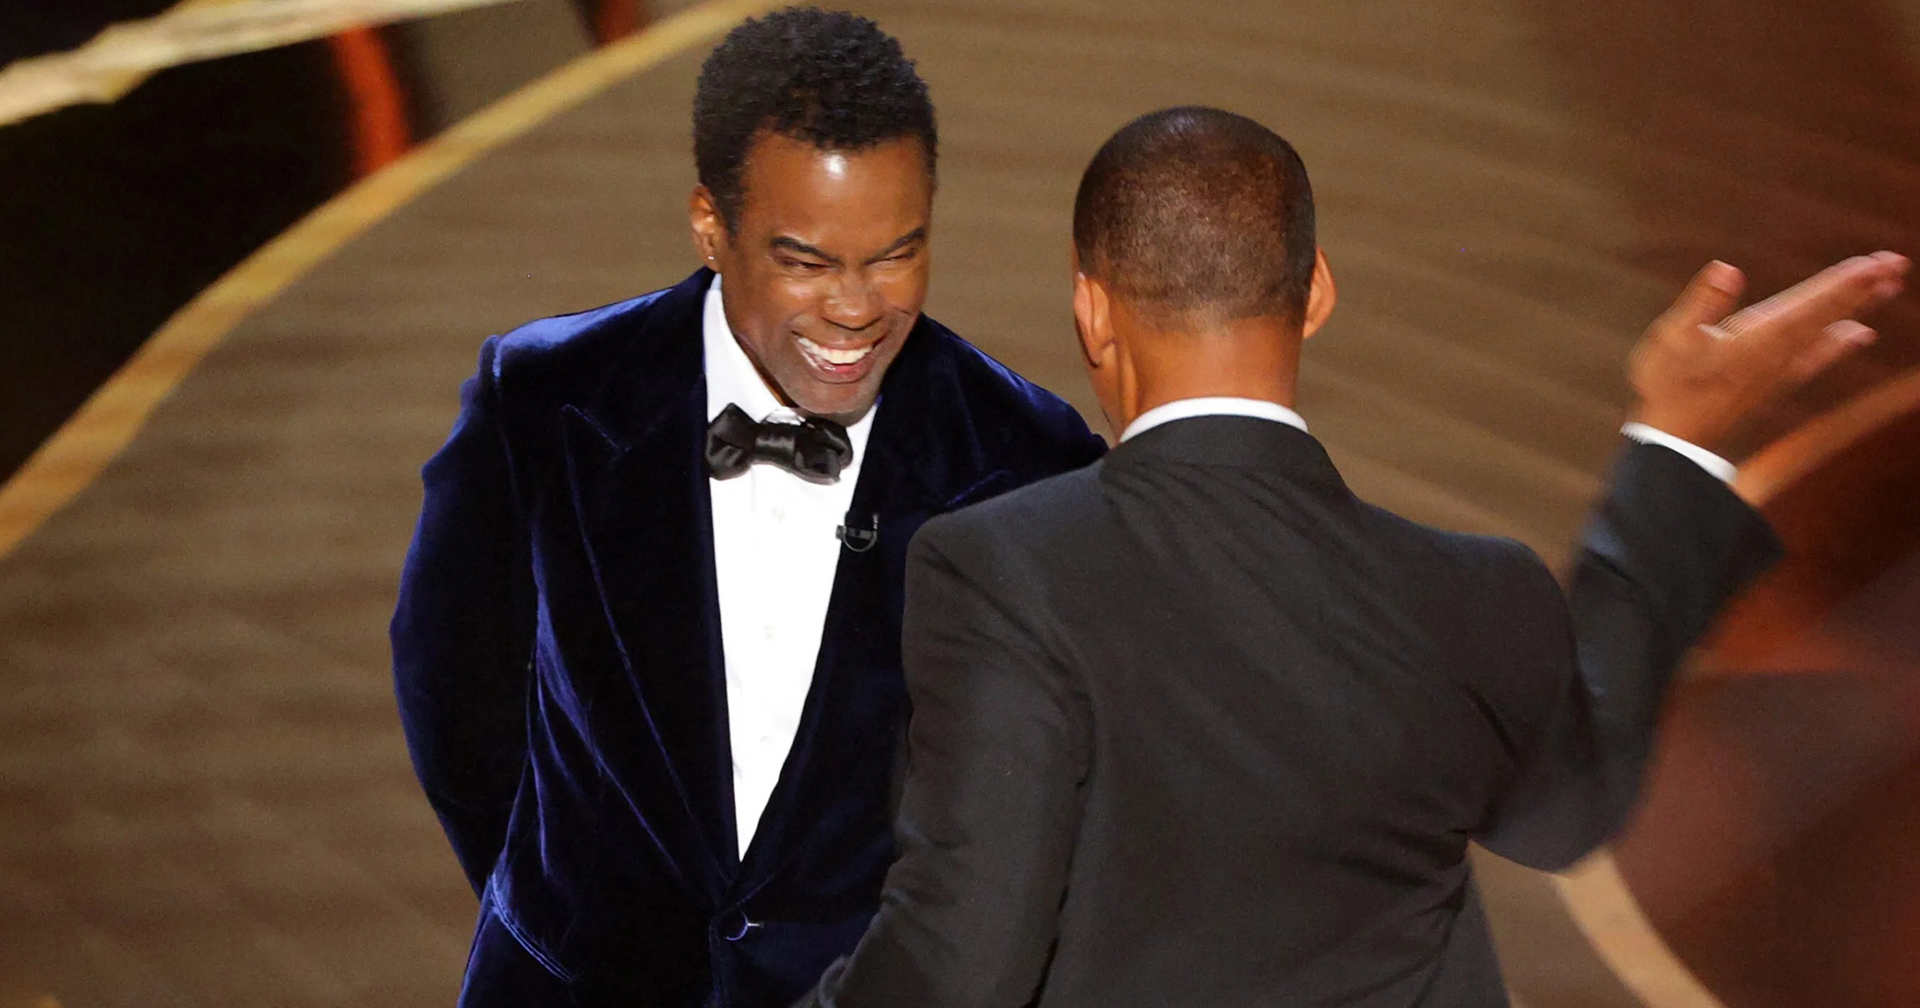 Oscars เพิ่มทีมรับมือวิกฤติฉุกเฉิน หวั่นซ้ำรอยเหตุตบสนั่นโลกบนเวทีแบบเดียวกับ Will Smith